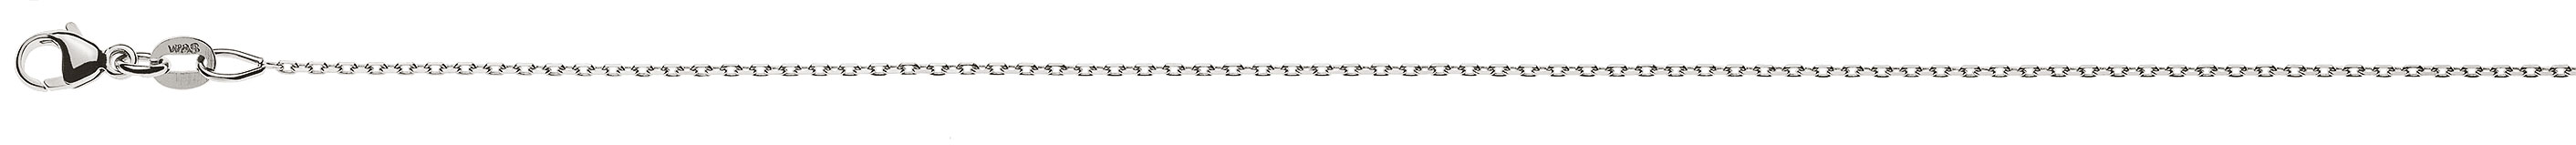 AURONOS Prestige Halskette Weissgold 18K Anker 4-fach geschliffen 38cm 0.9mm